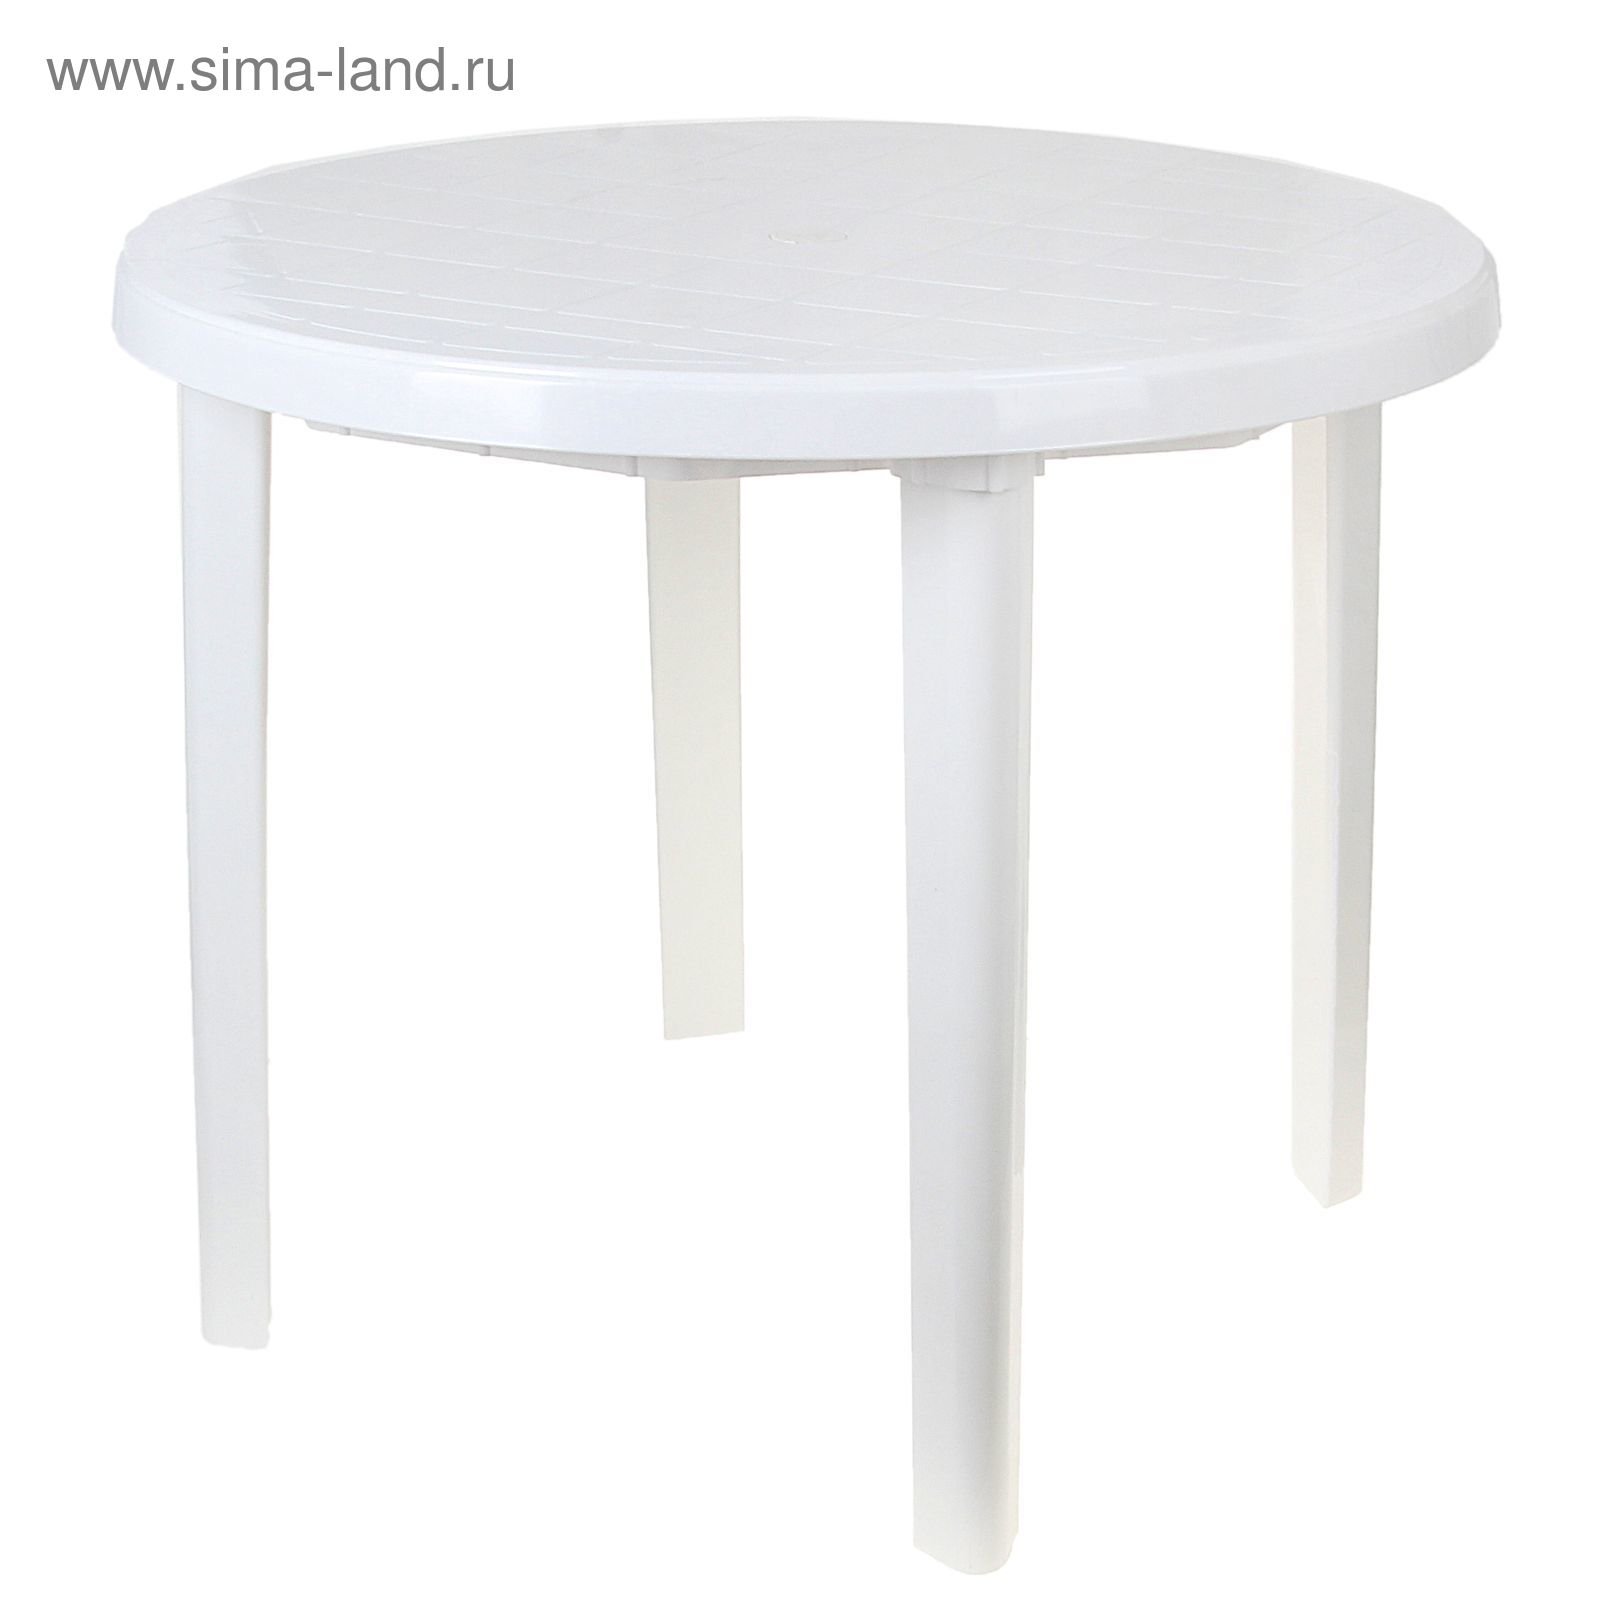 Стол круглый, размер 90 х 90 х 75 см, цвет белый